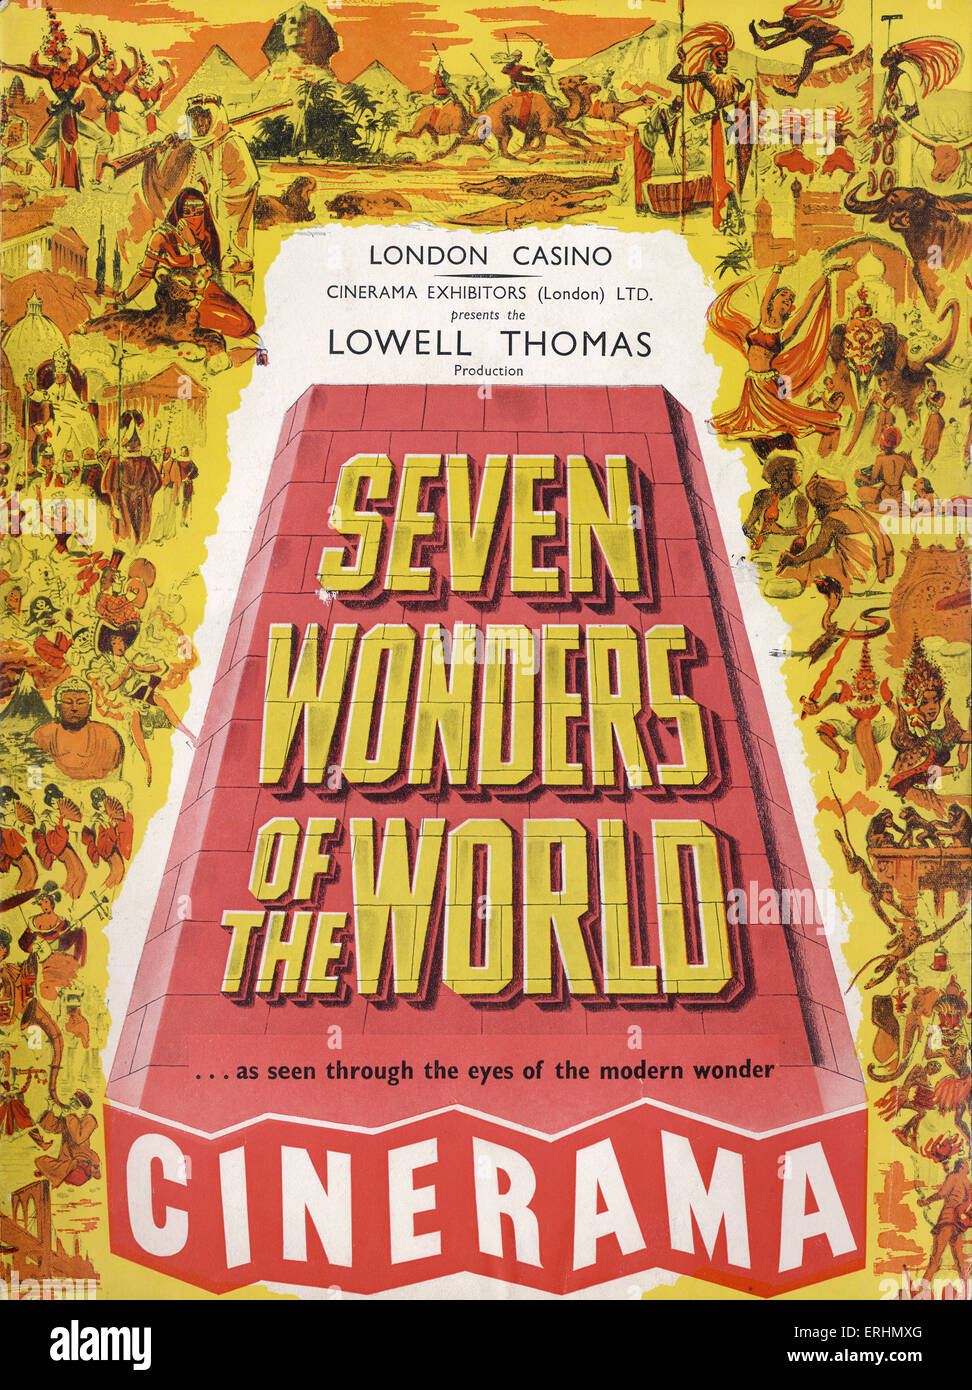 Sette Meraviglie del Mondo - coperchio del programma per la produzione di Glossari Affini da Lowell Thomas presso il London Casinò / Casino Glossari Affini Foto Stock